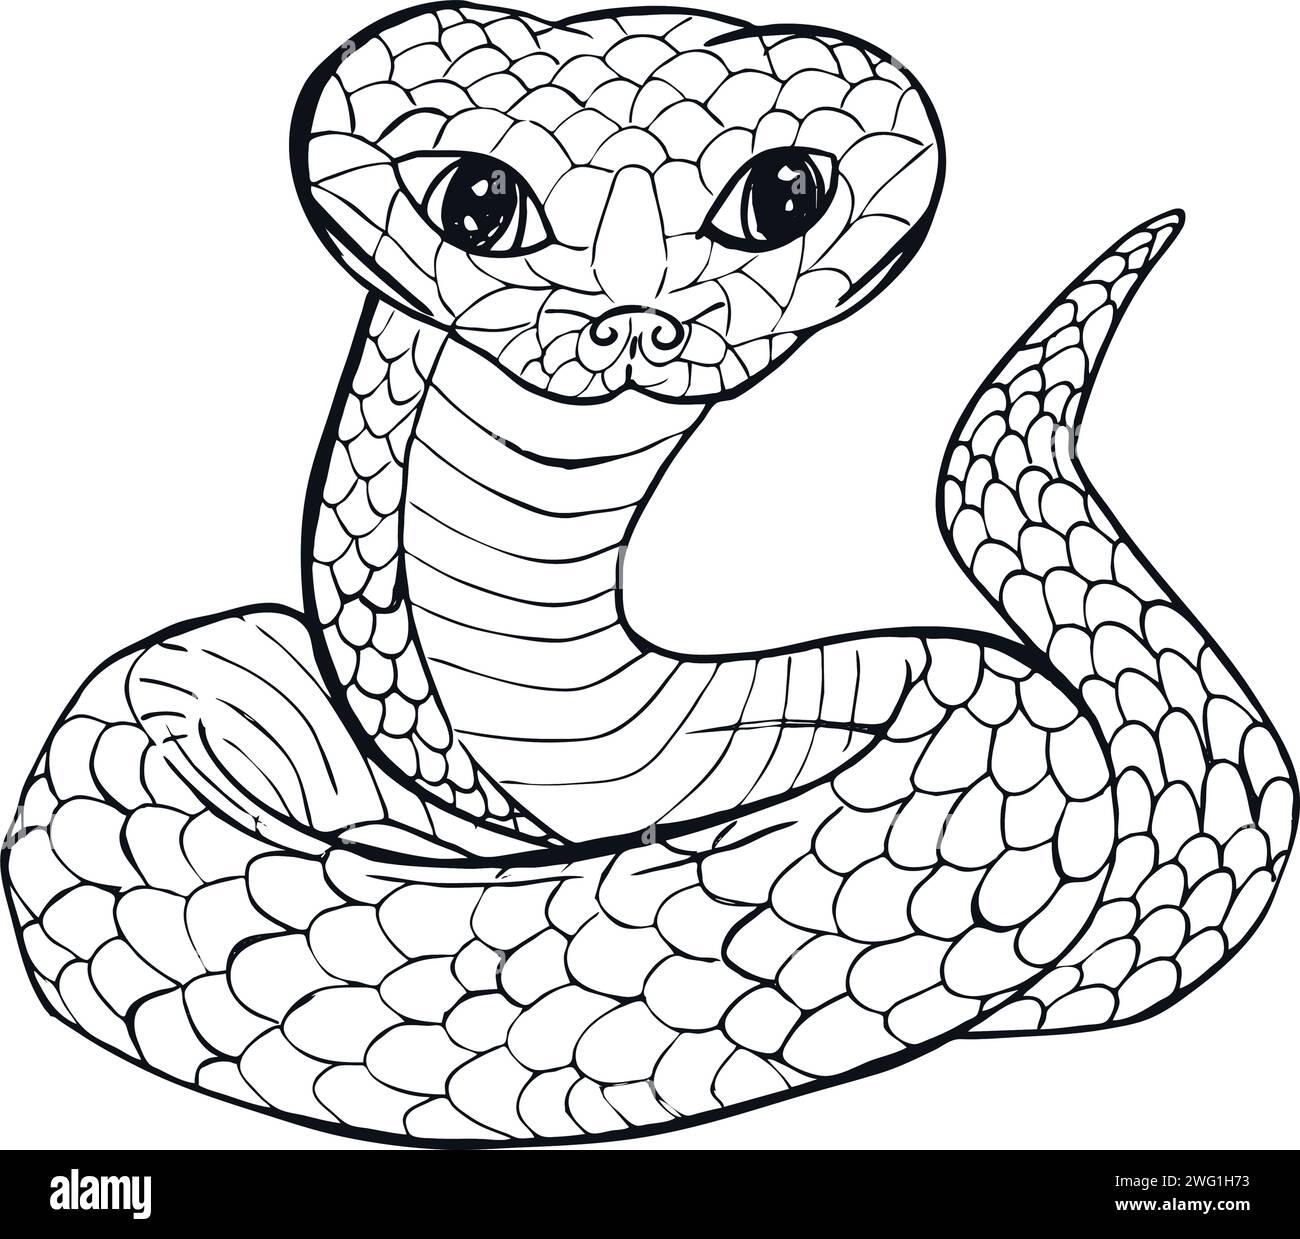 Bella, ma pericolosa, a righe nere con grigia, una linea di arte serpente marino separata su sfondo bianco. Illustrazione di cartoni animati vettoriali, colorazione della pagina b Illustrazione Vettoriale